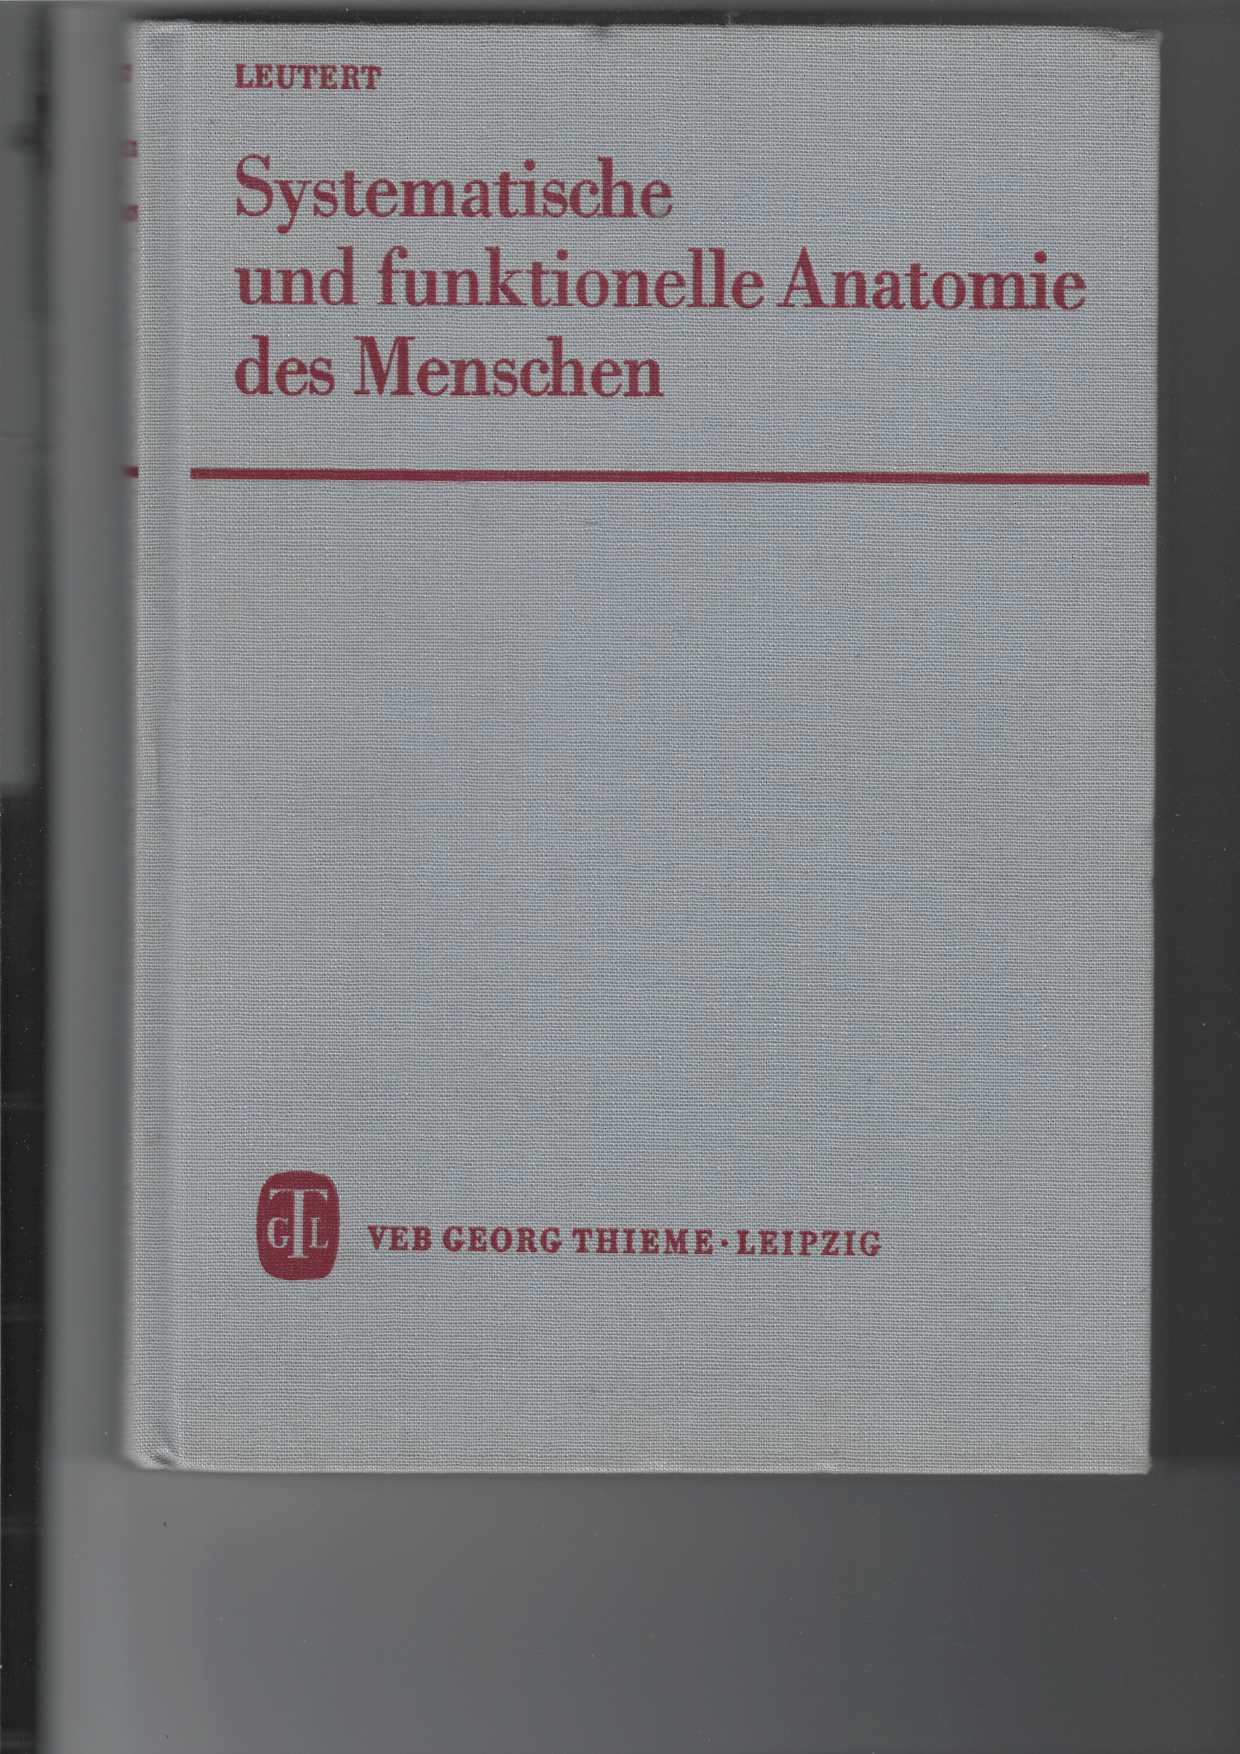 Leutert, Gerald:  Systematische und funktionelle Anatomie des Menschen. 